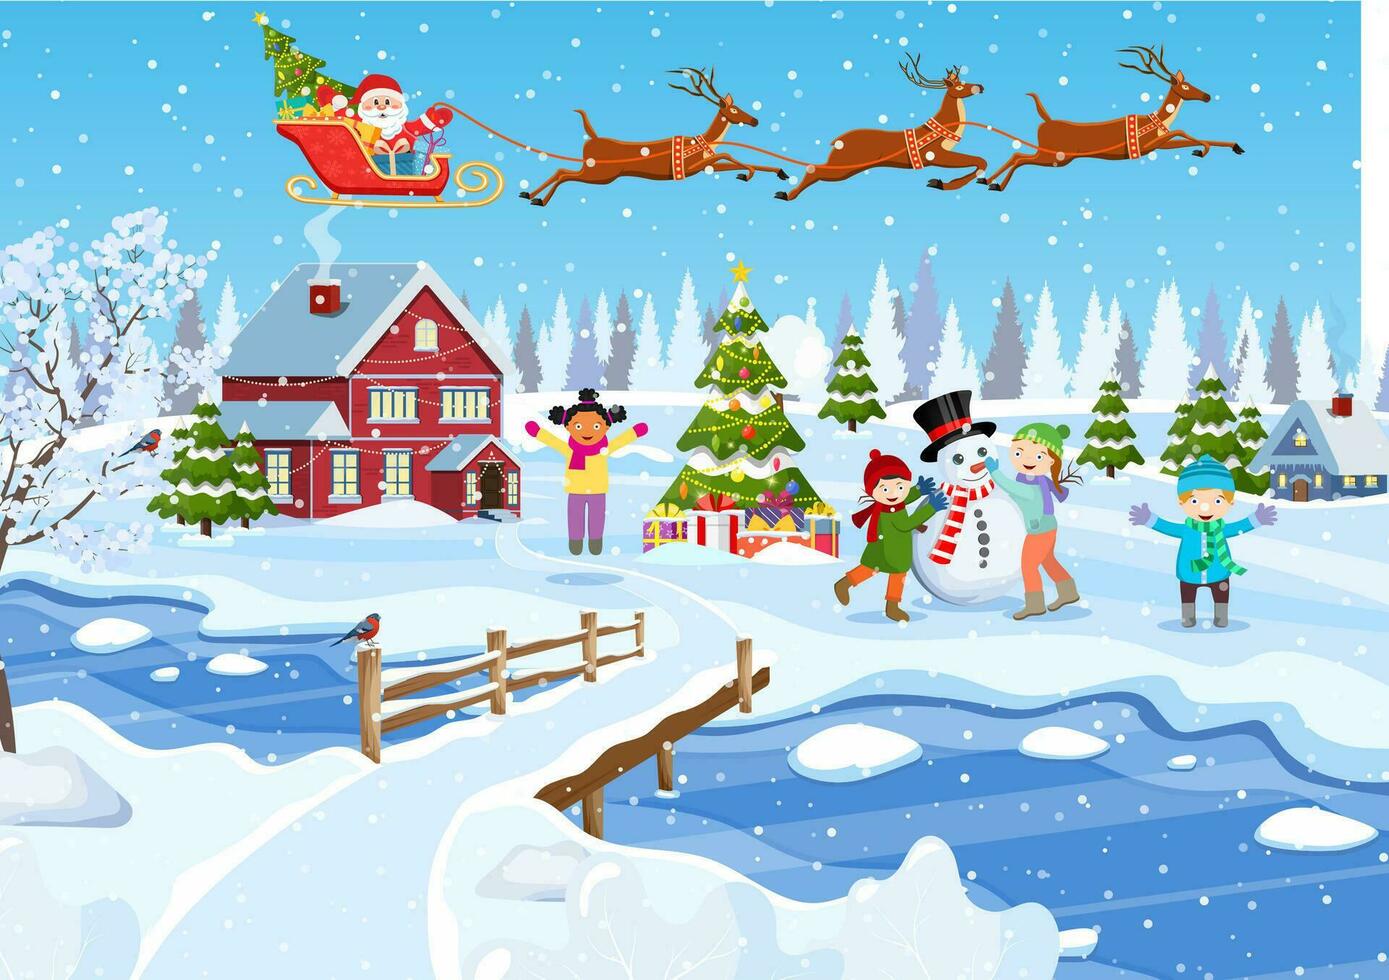 contento nuevo año y alegre Navidad saludo tarjeta. Navidad paisaje. Navidad árbol. niños edificio muñeco de nieve. invierno vacaciones. vector ilustración en plano estilo